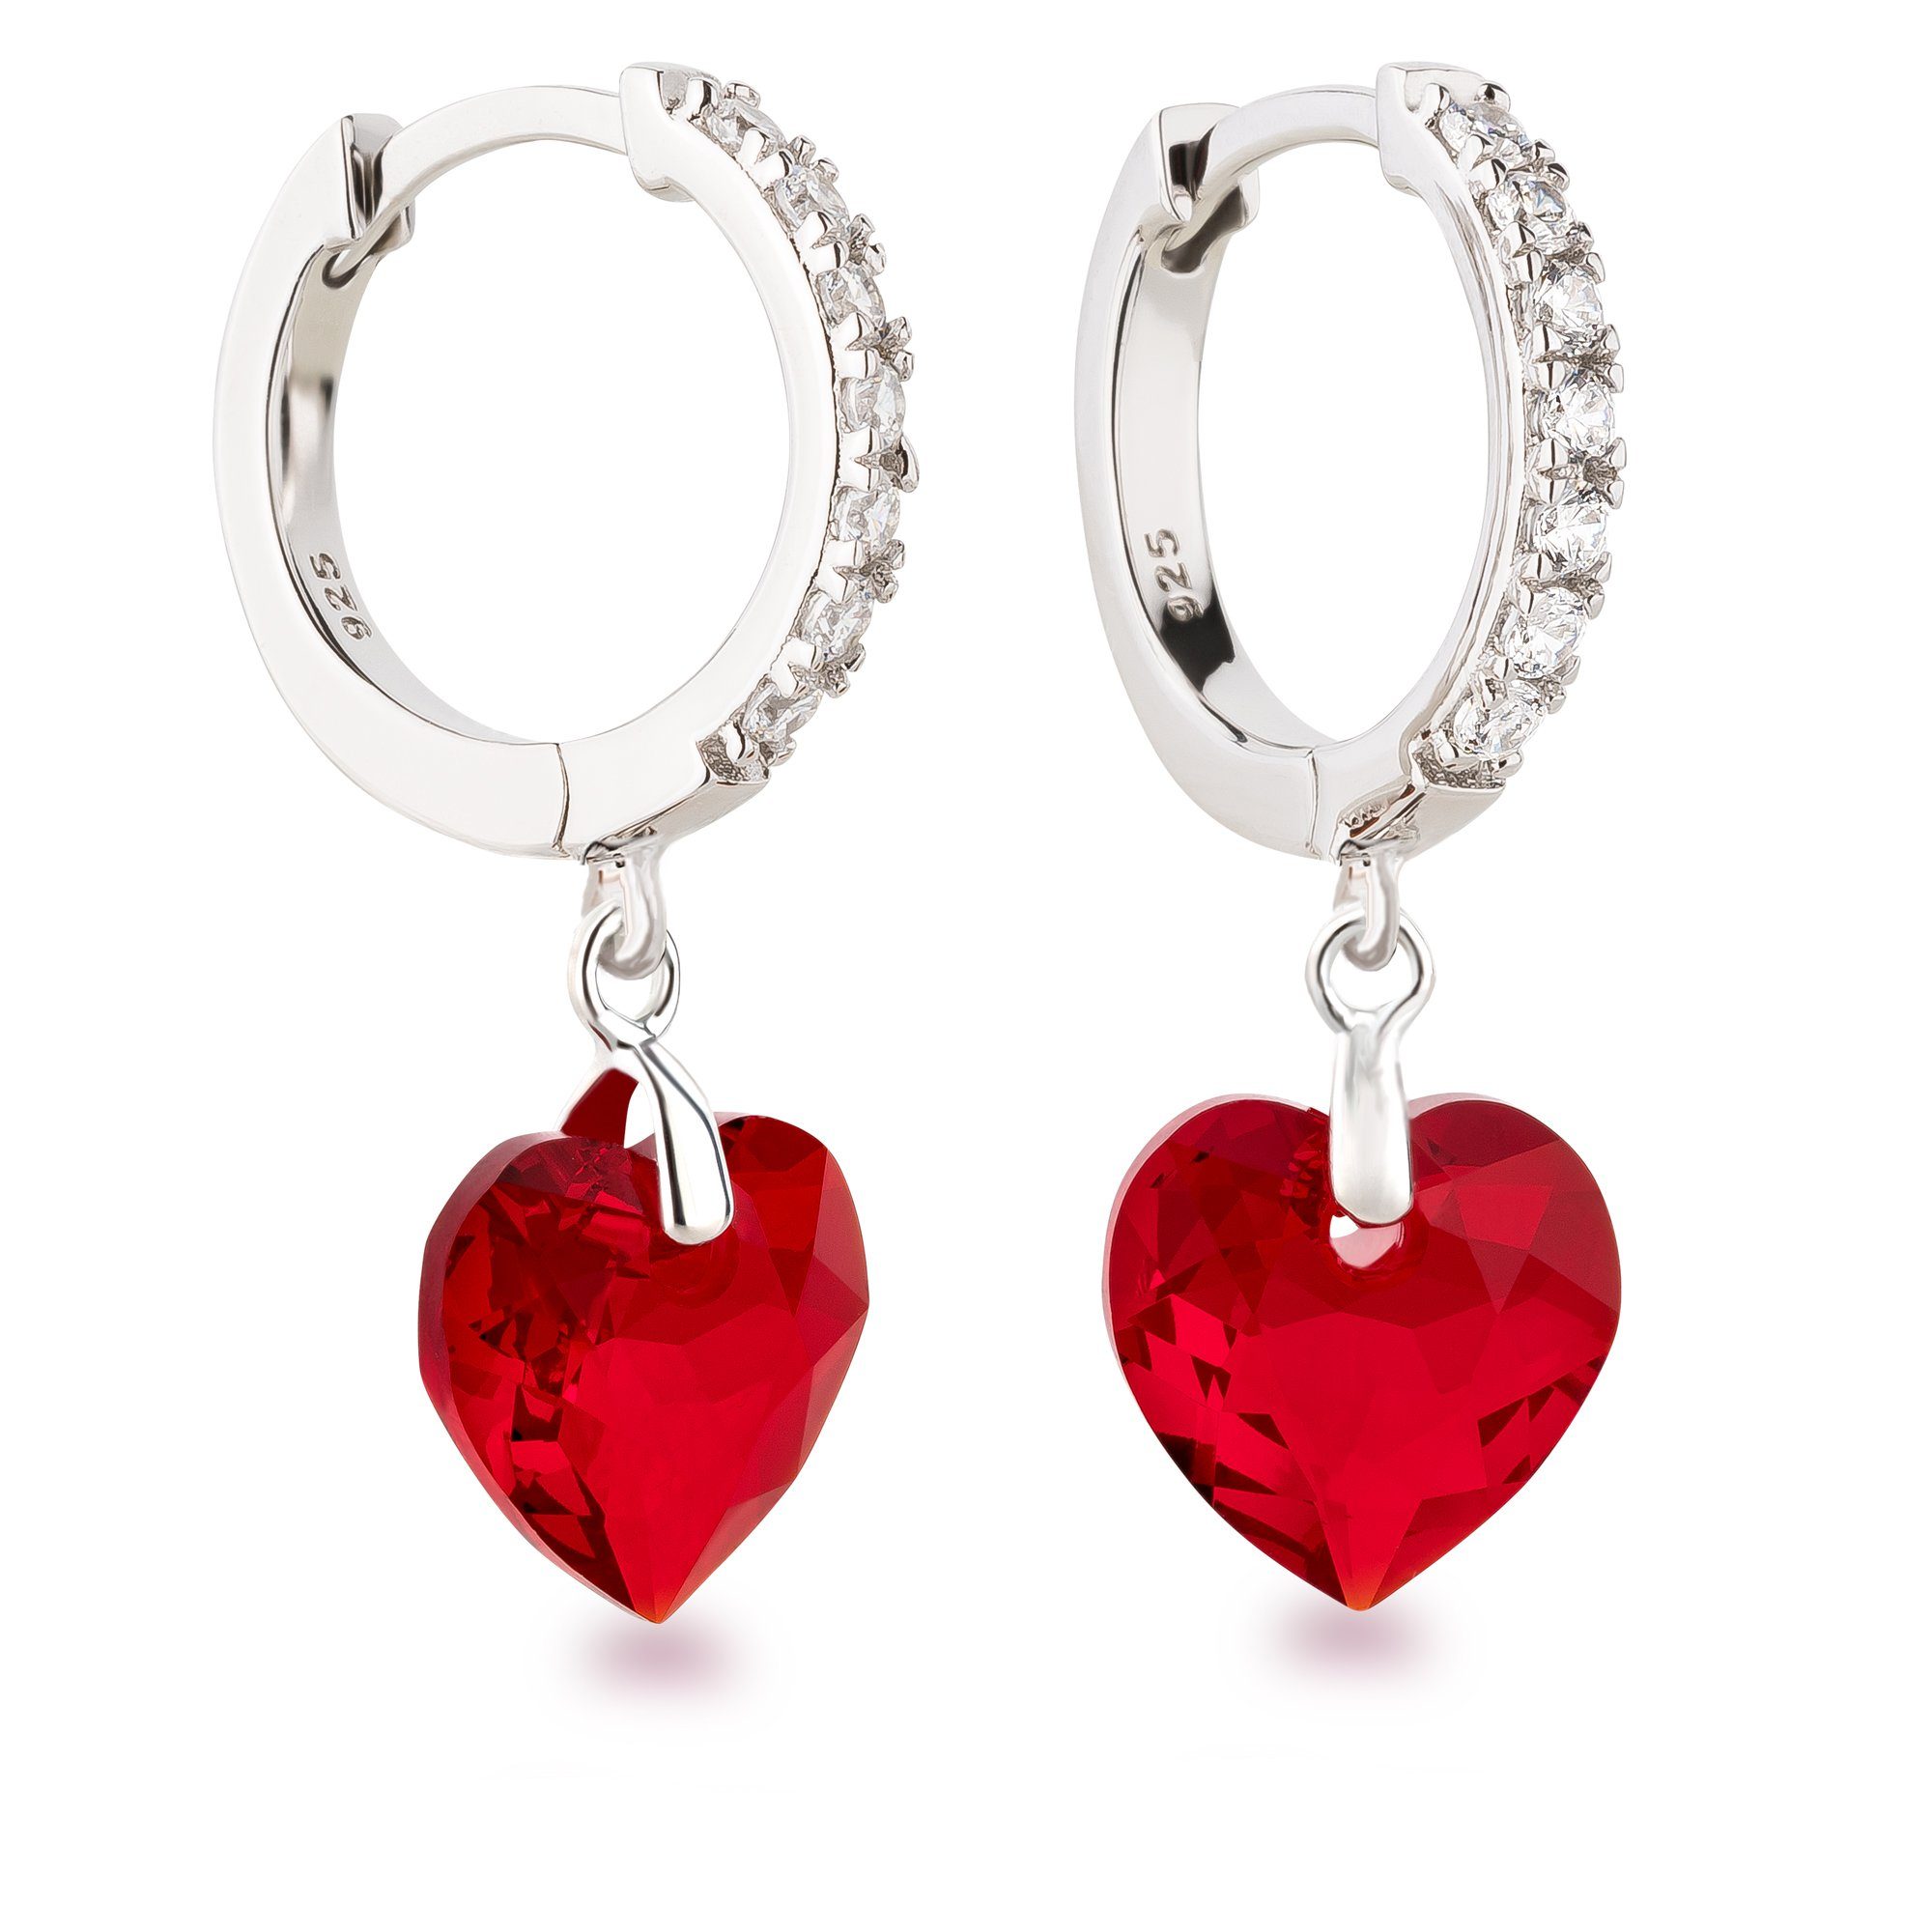 Schöner-SD 925 hängend Zirkonia, Herzohrringe, Kristalle mit Markenkristall mit Silber Ohrhänger Paar Herz rote Ohrringe